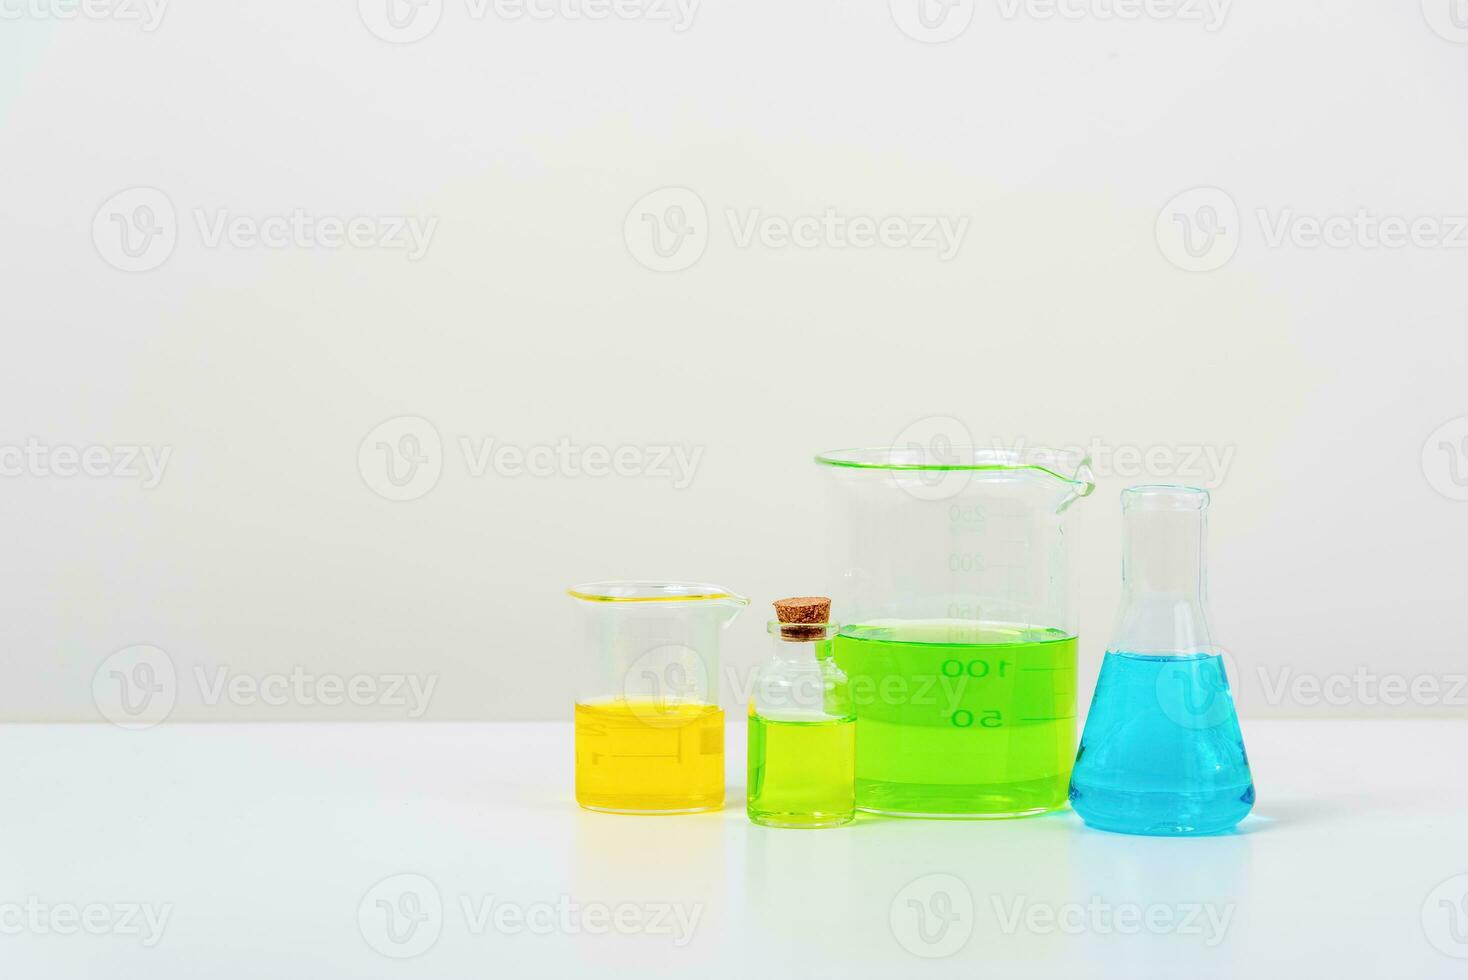 några testa rör på de vit tabell med bägare, flaskor, och testa rör fylld med färgrik vätskor foto